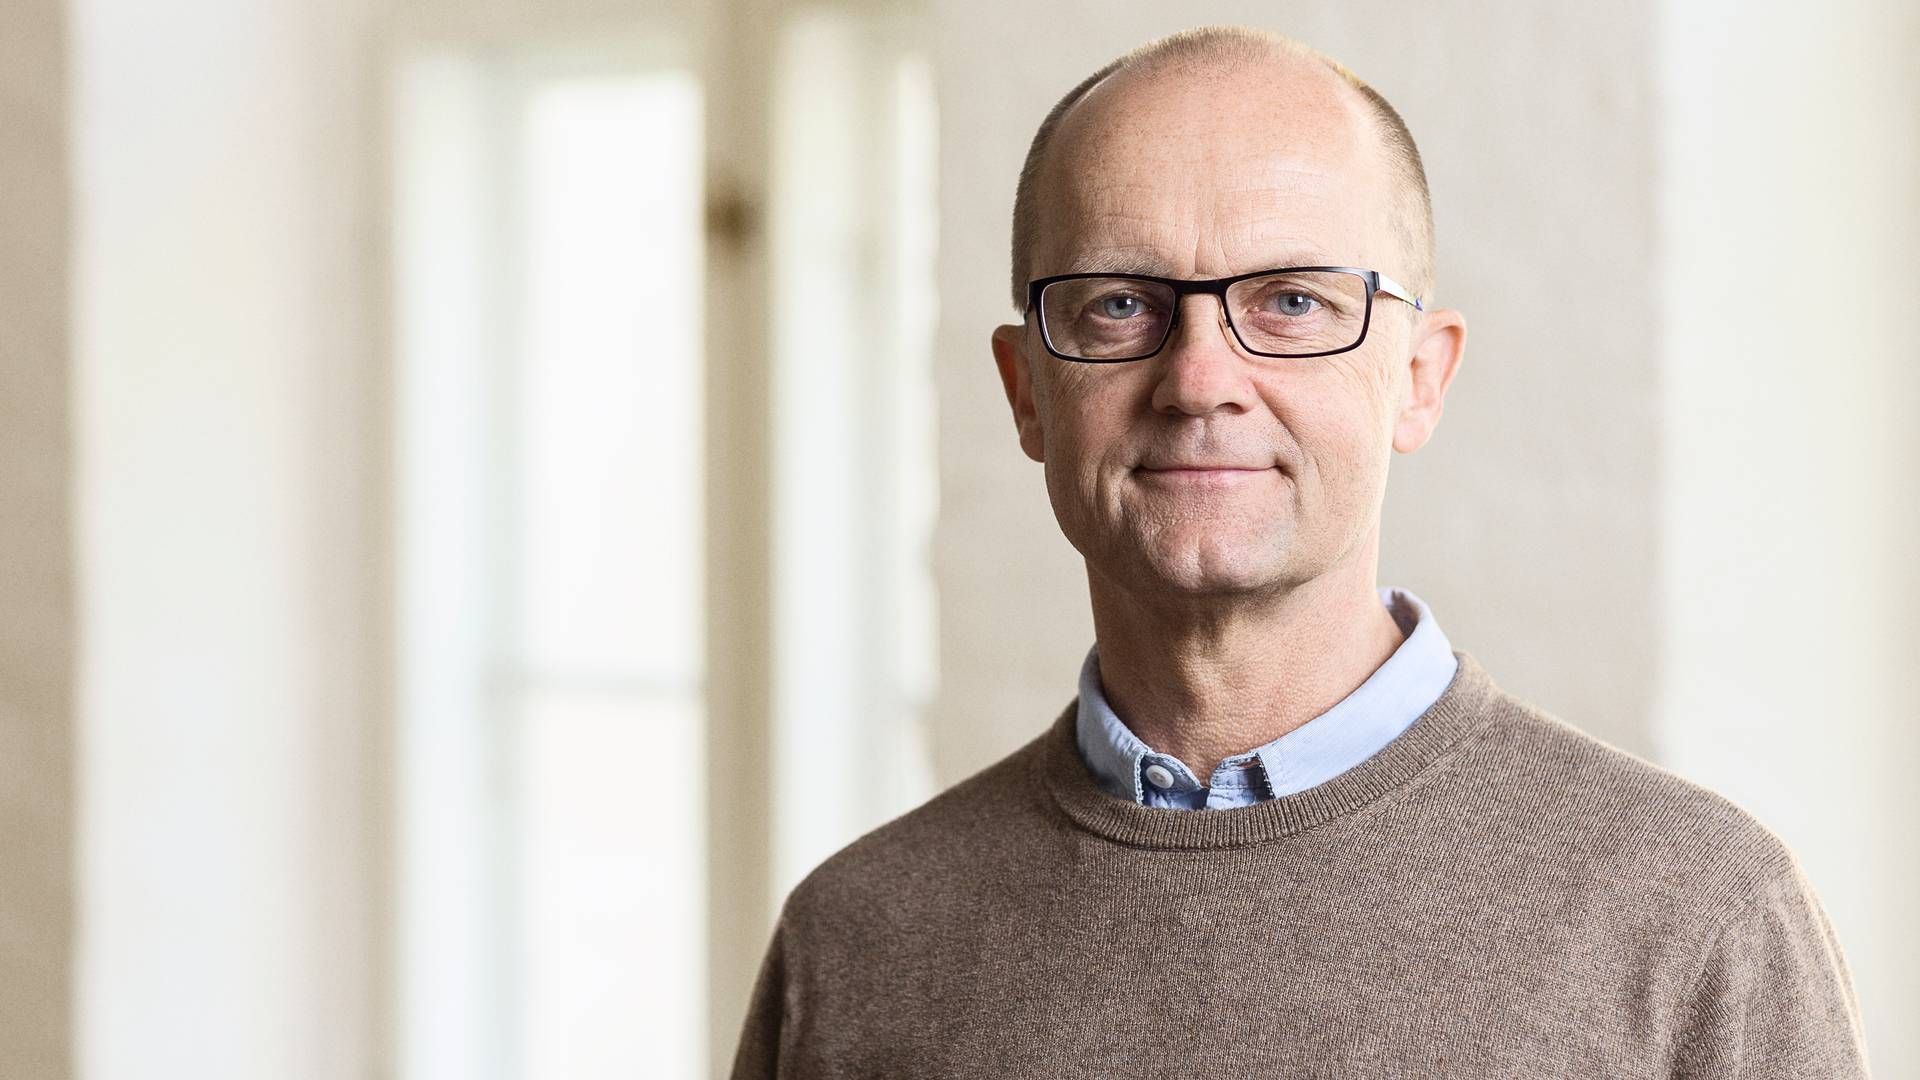 Forsøg på at ændre prisportal har ikke båret frugt, siger Morten Bruun Pedersen, cheføkonom i Forbrugerrådet Tænk, til Børsen. | Foto: Pr